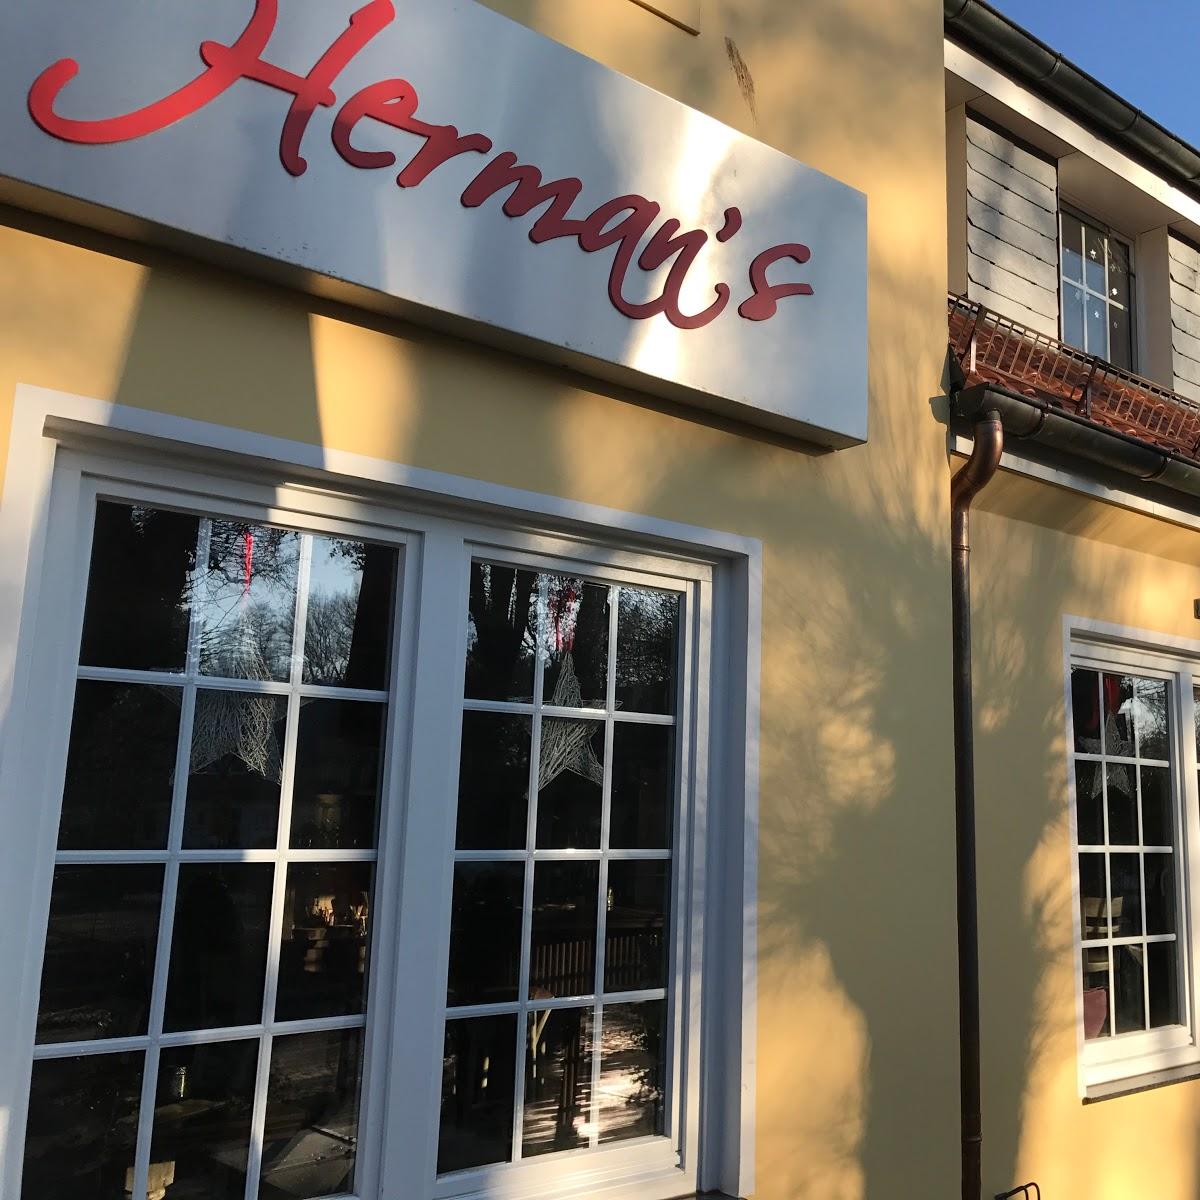 Restaurant "Herman‘ Post" in Bremen